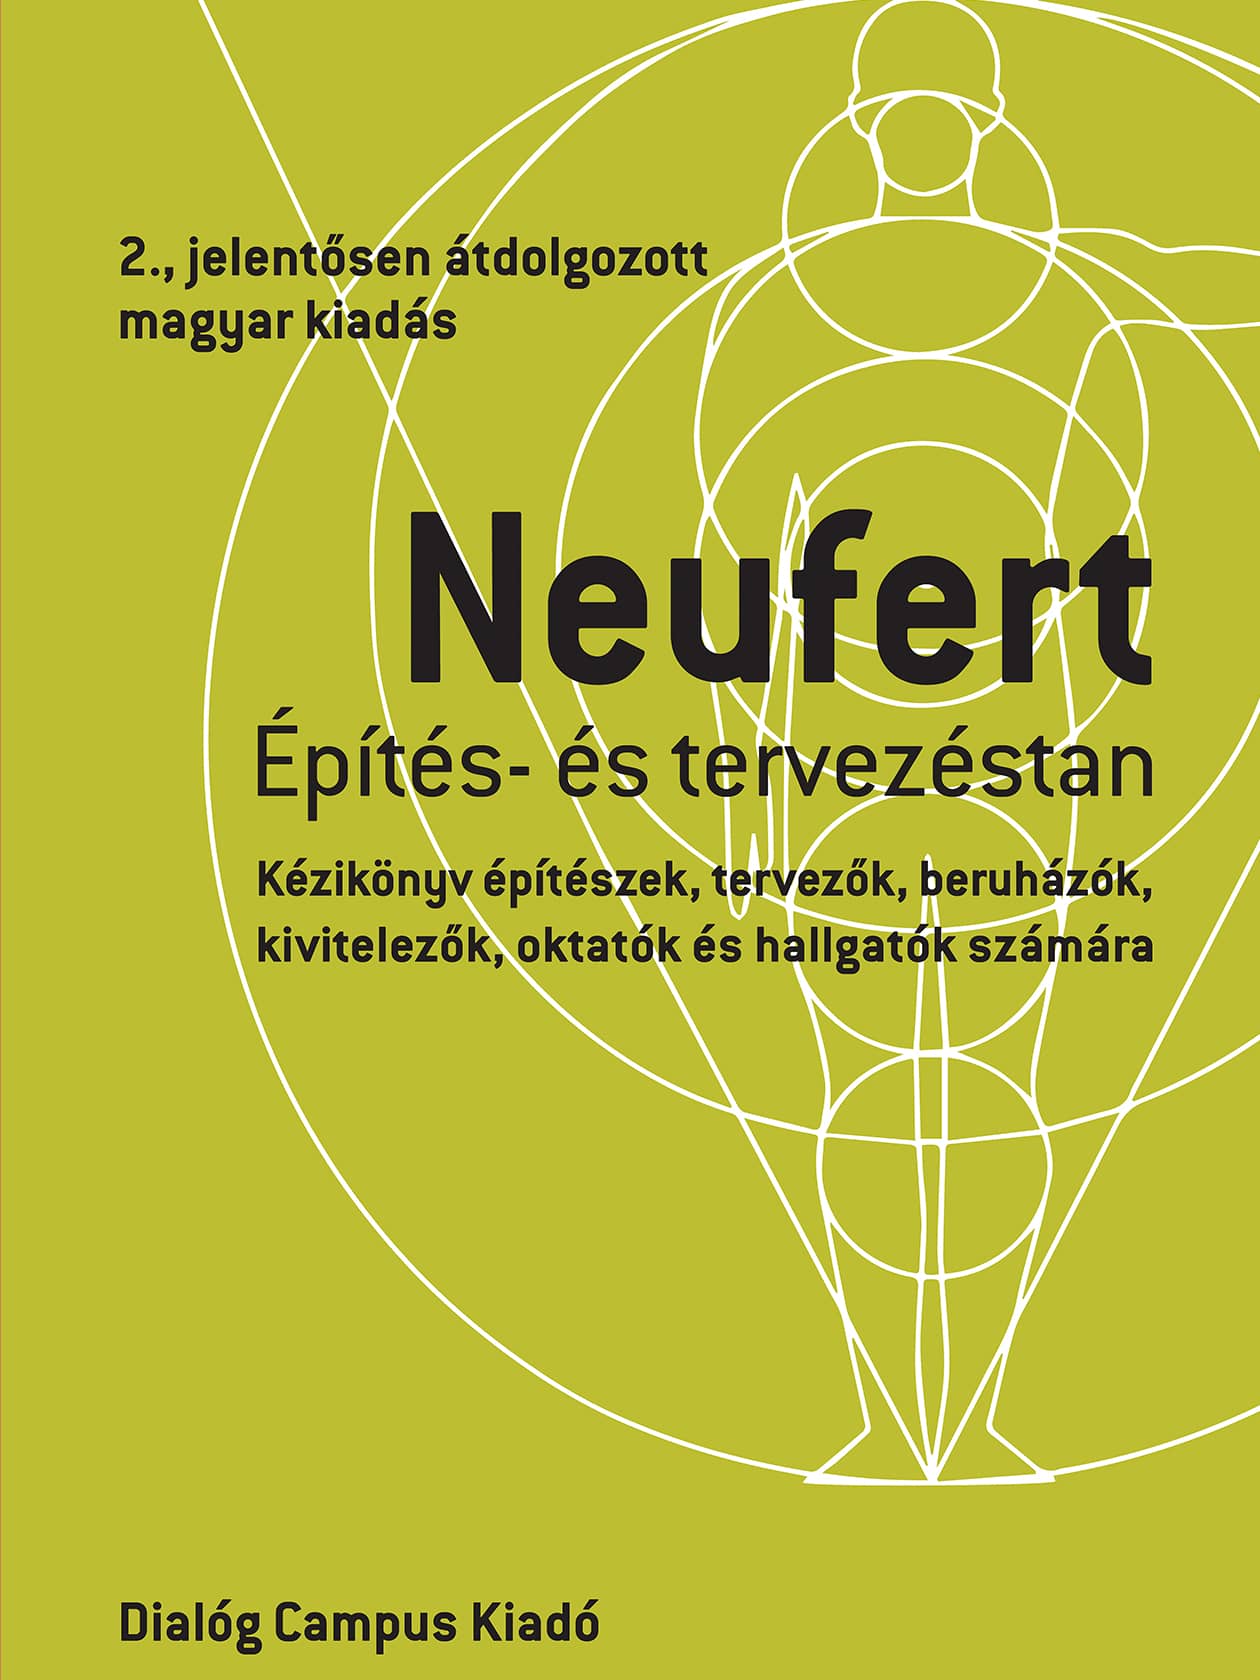 Hungarian edition of the Bauentwurfslehre of Ernst Neufert